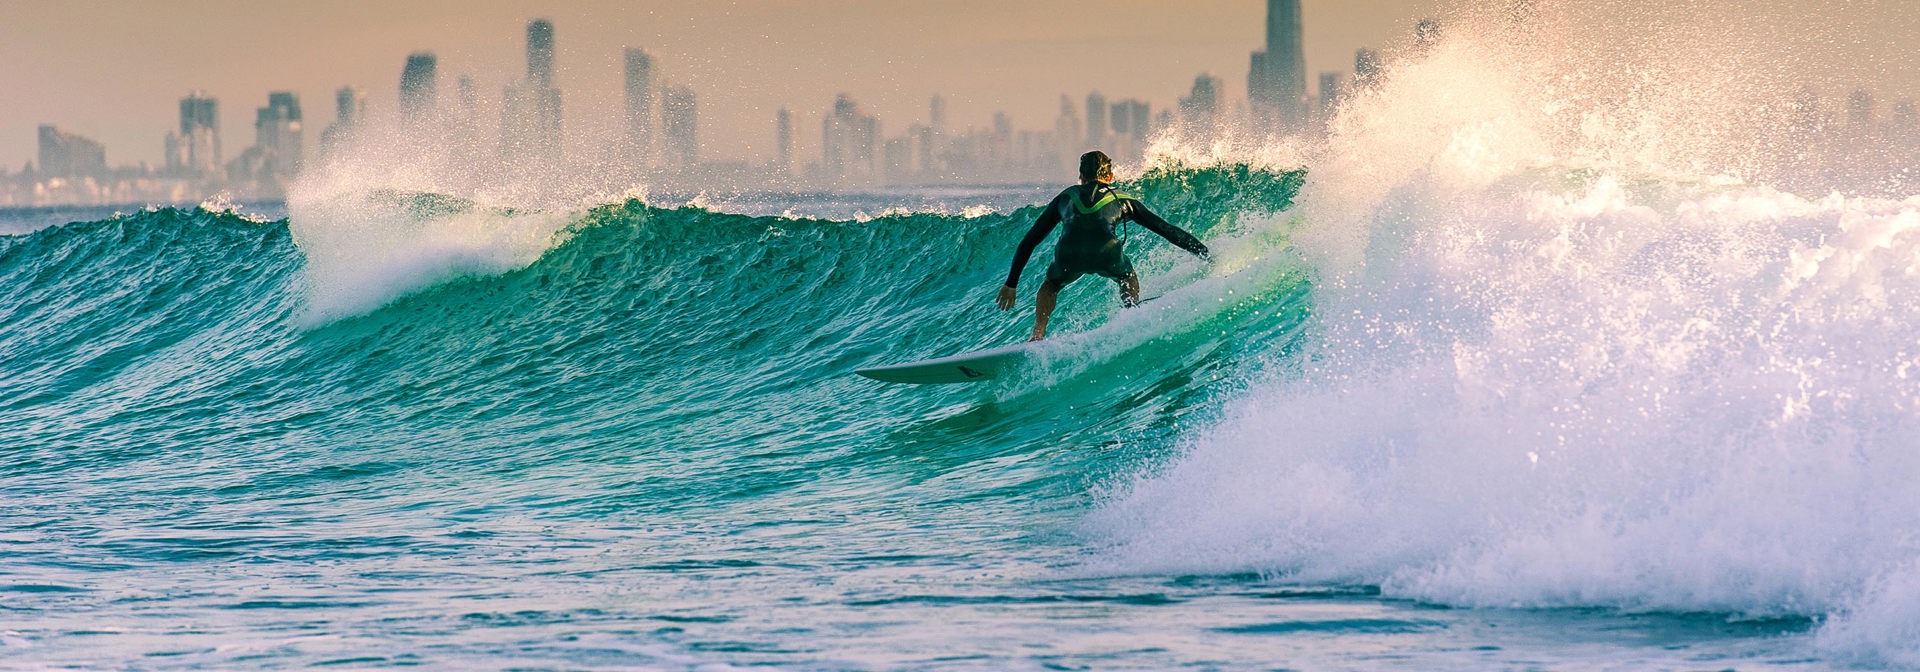 australien - bondi beach_surfer_01